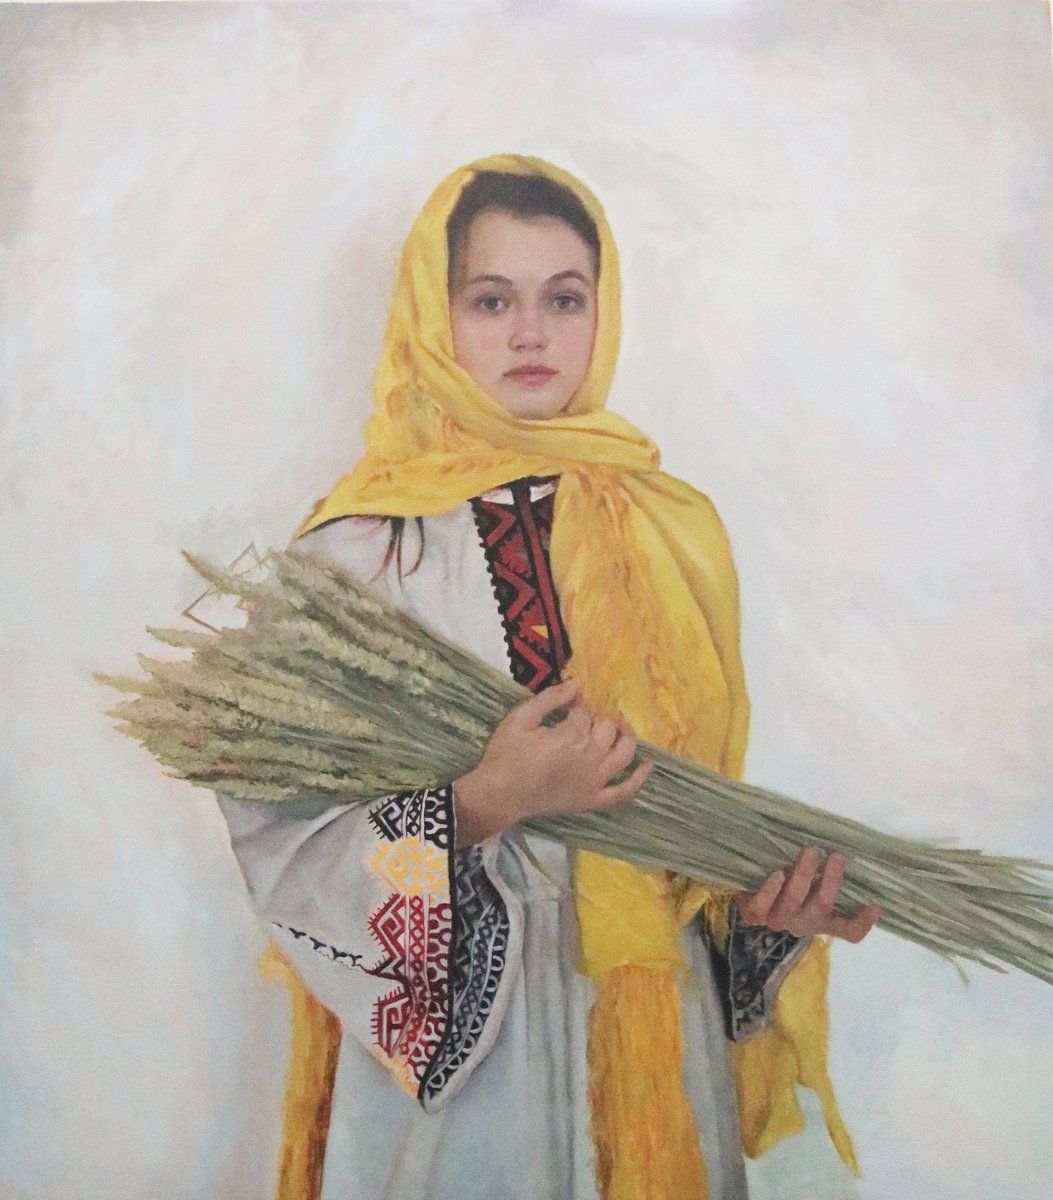 Girl with sheaves of wheat by Radosveta Zhelyazkova